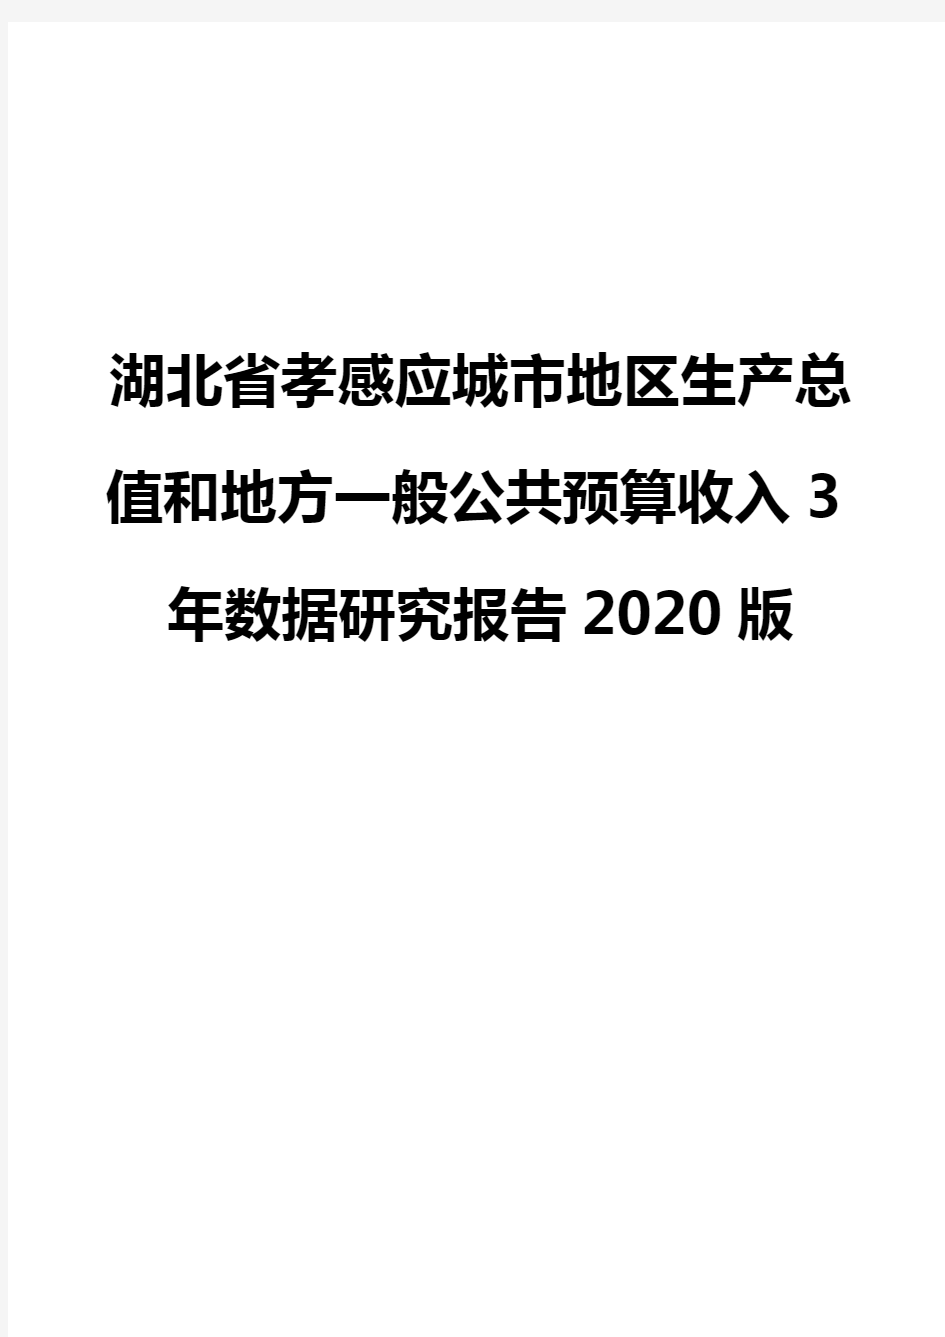 湖北省孝感应城市地区生产总值和地方一般公共预算收入3年数据研究报告2020版